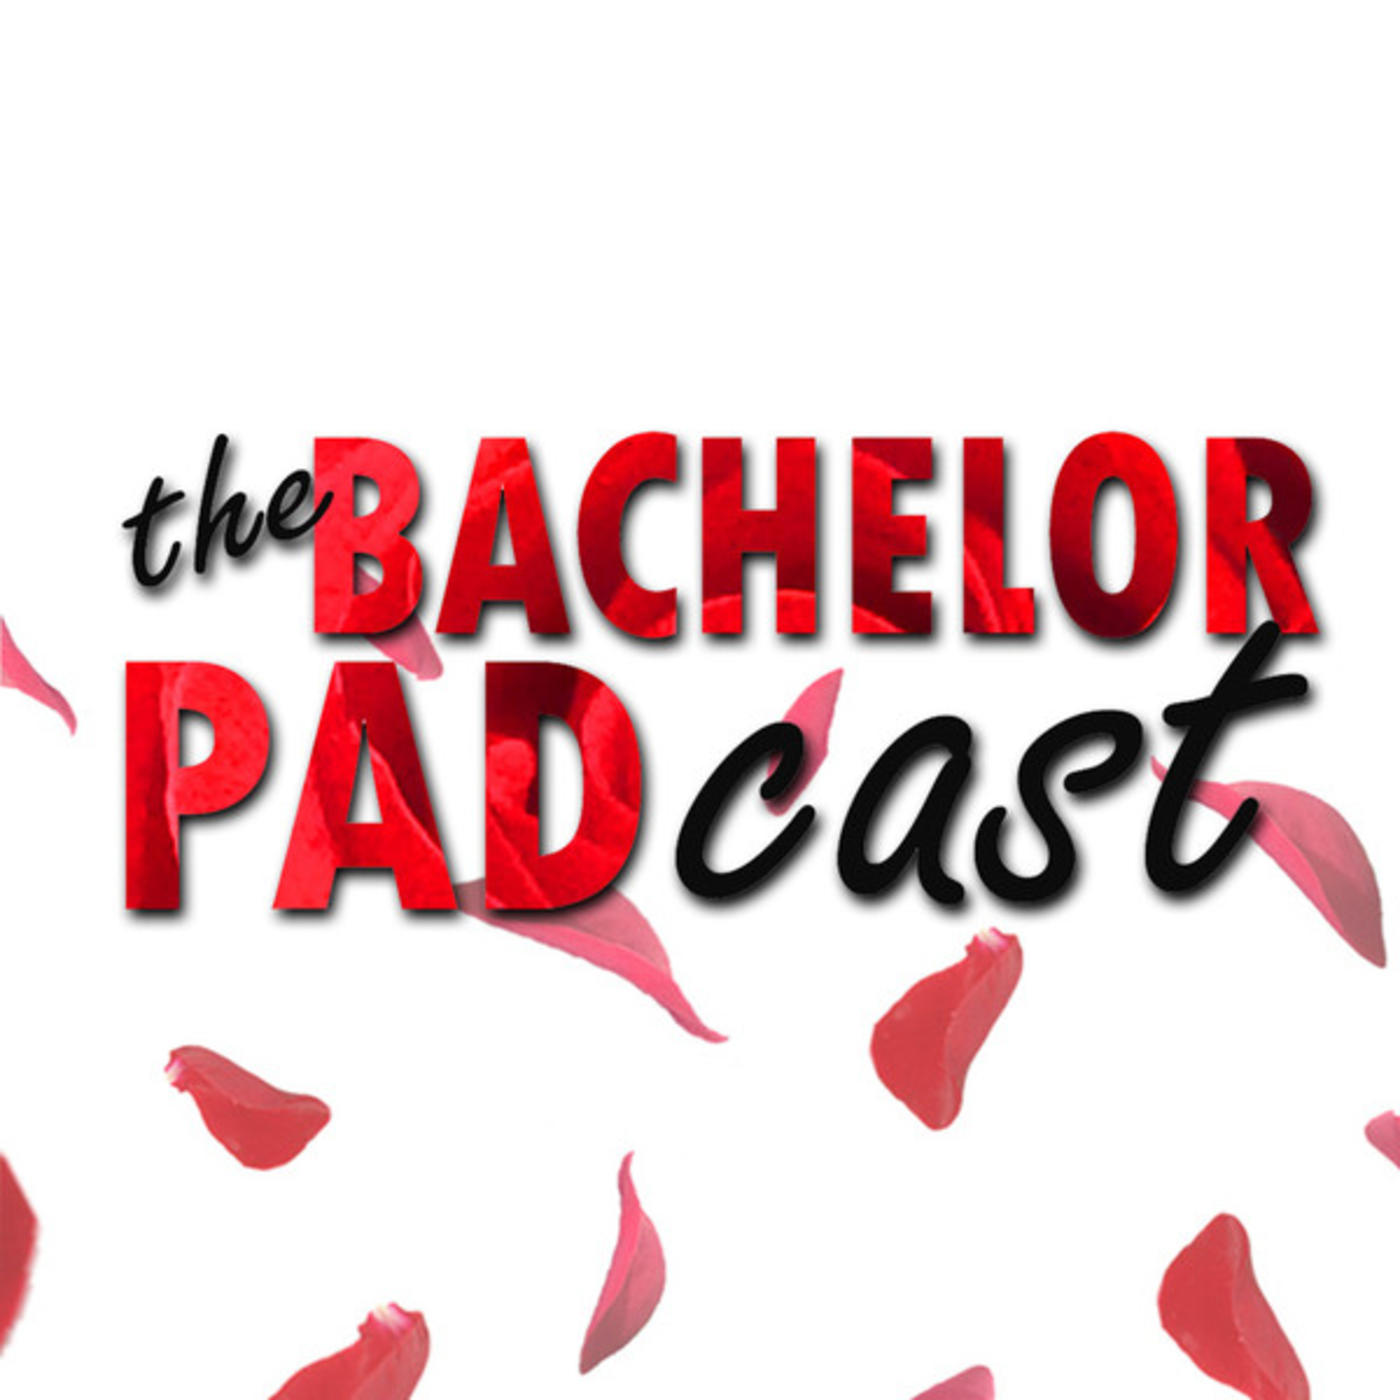 The Bachelorette - Charity Kicks Off Season 20